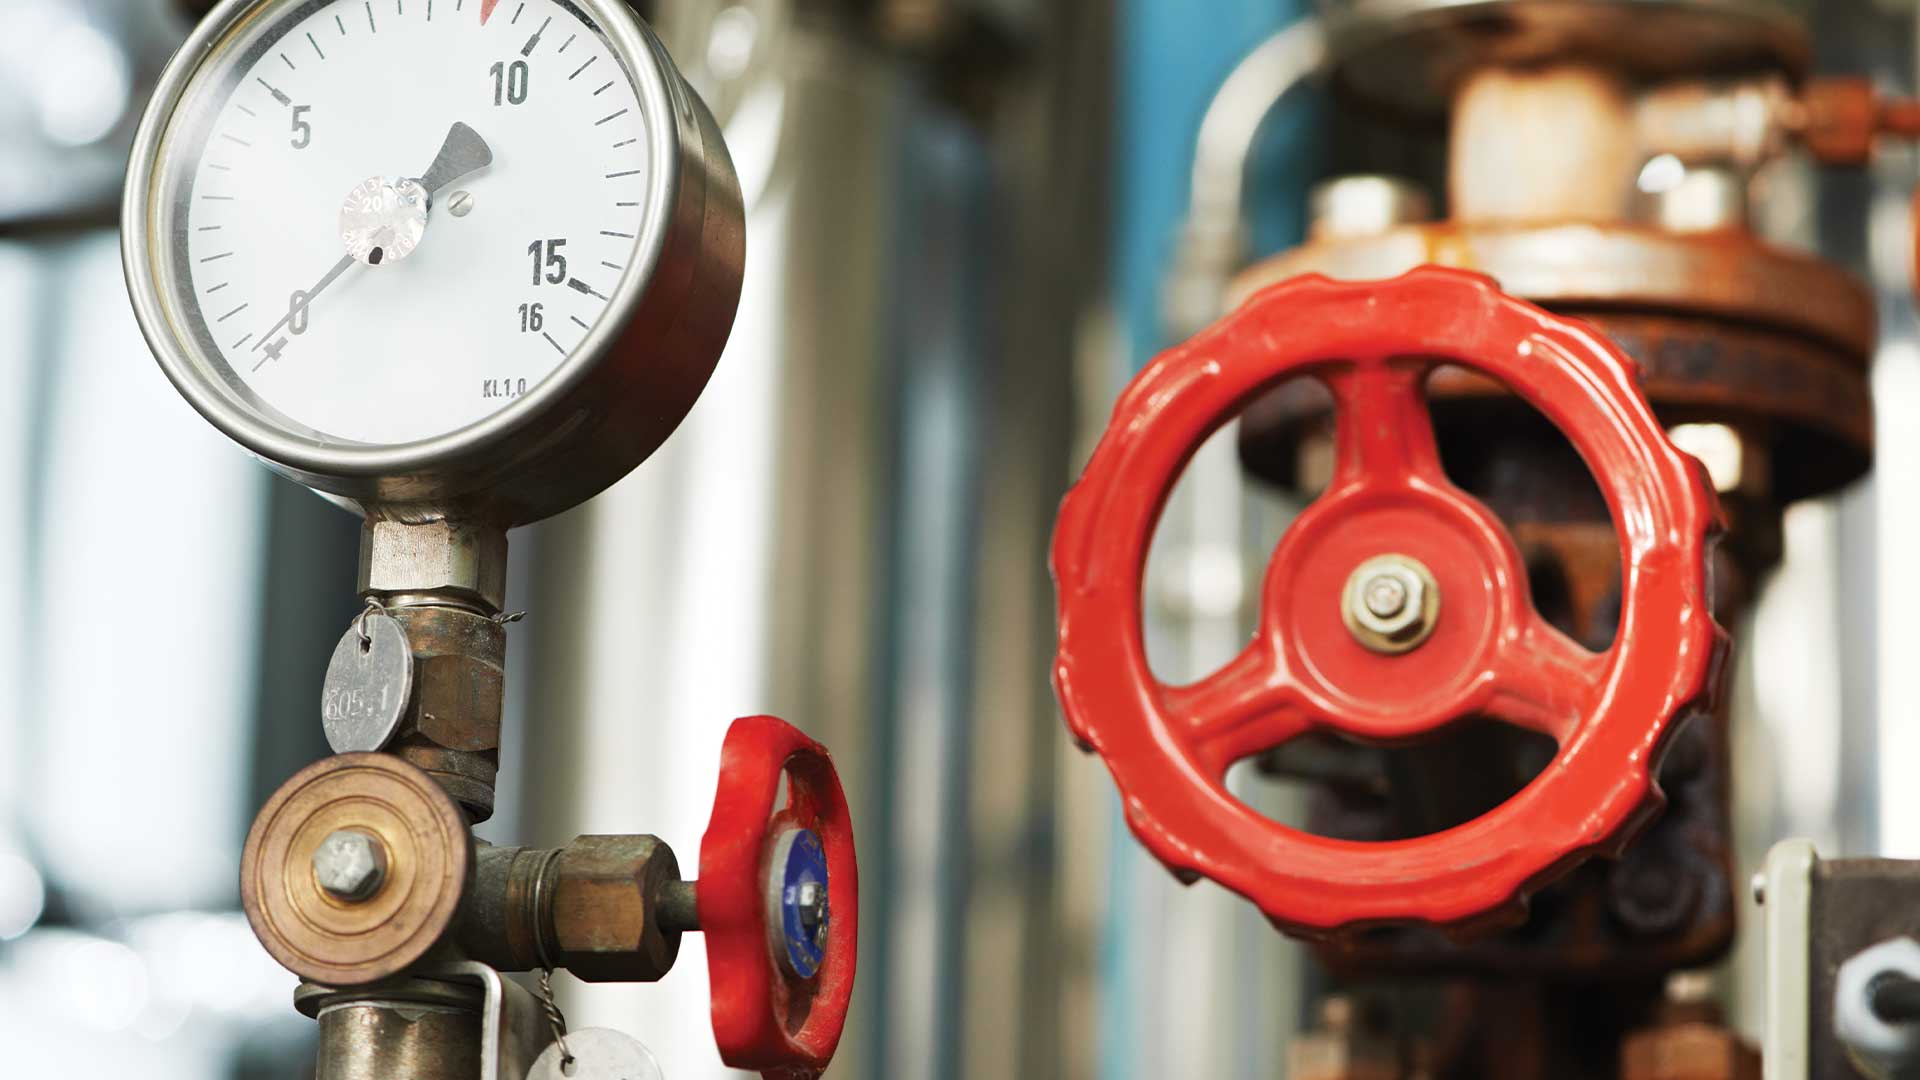 Boiler valves and gauges